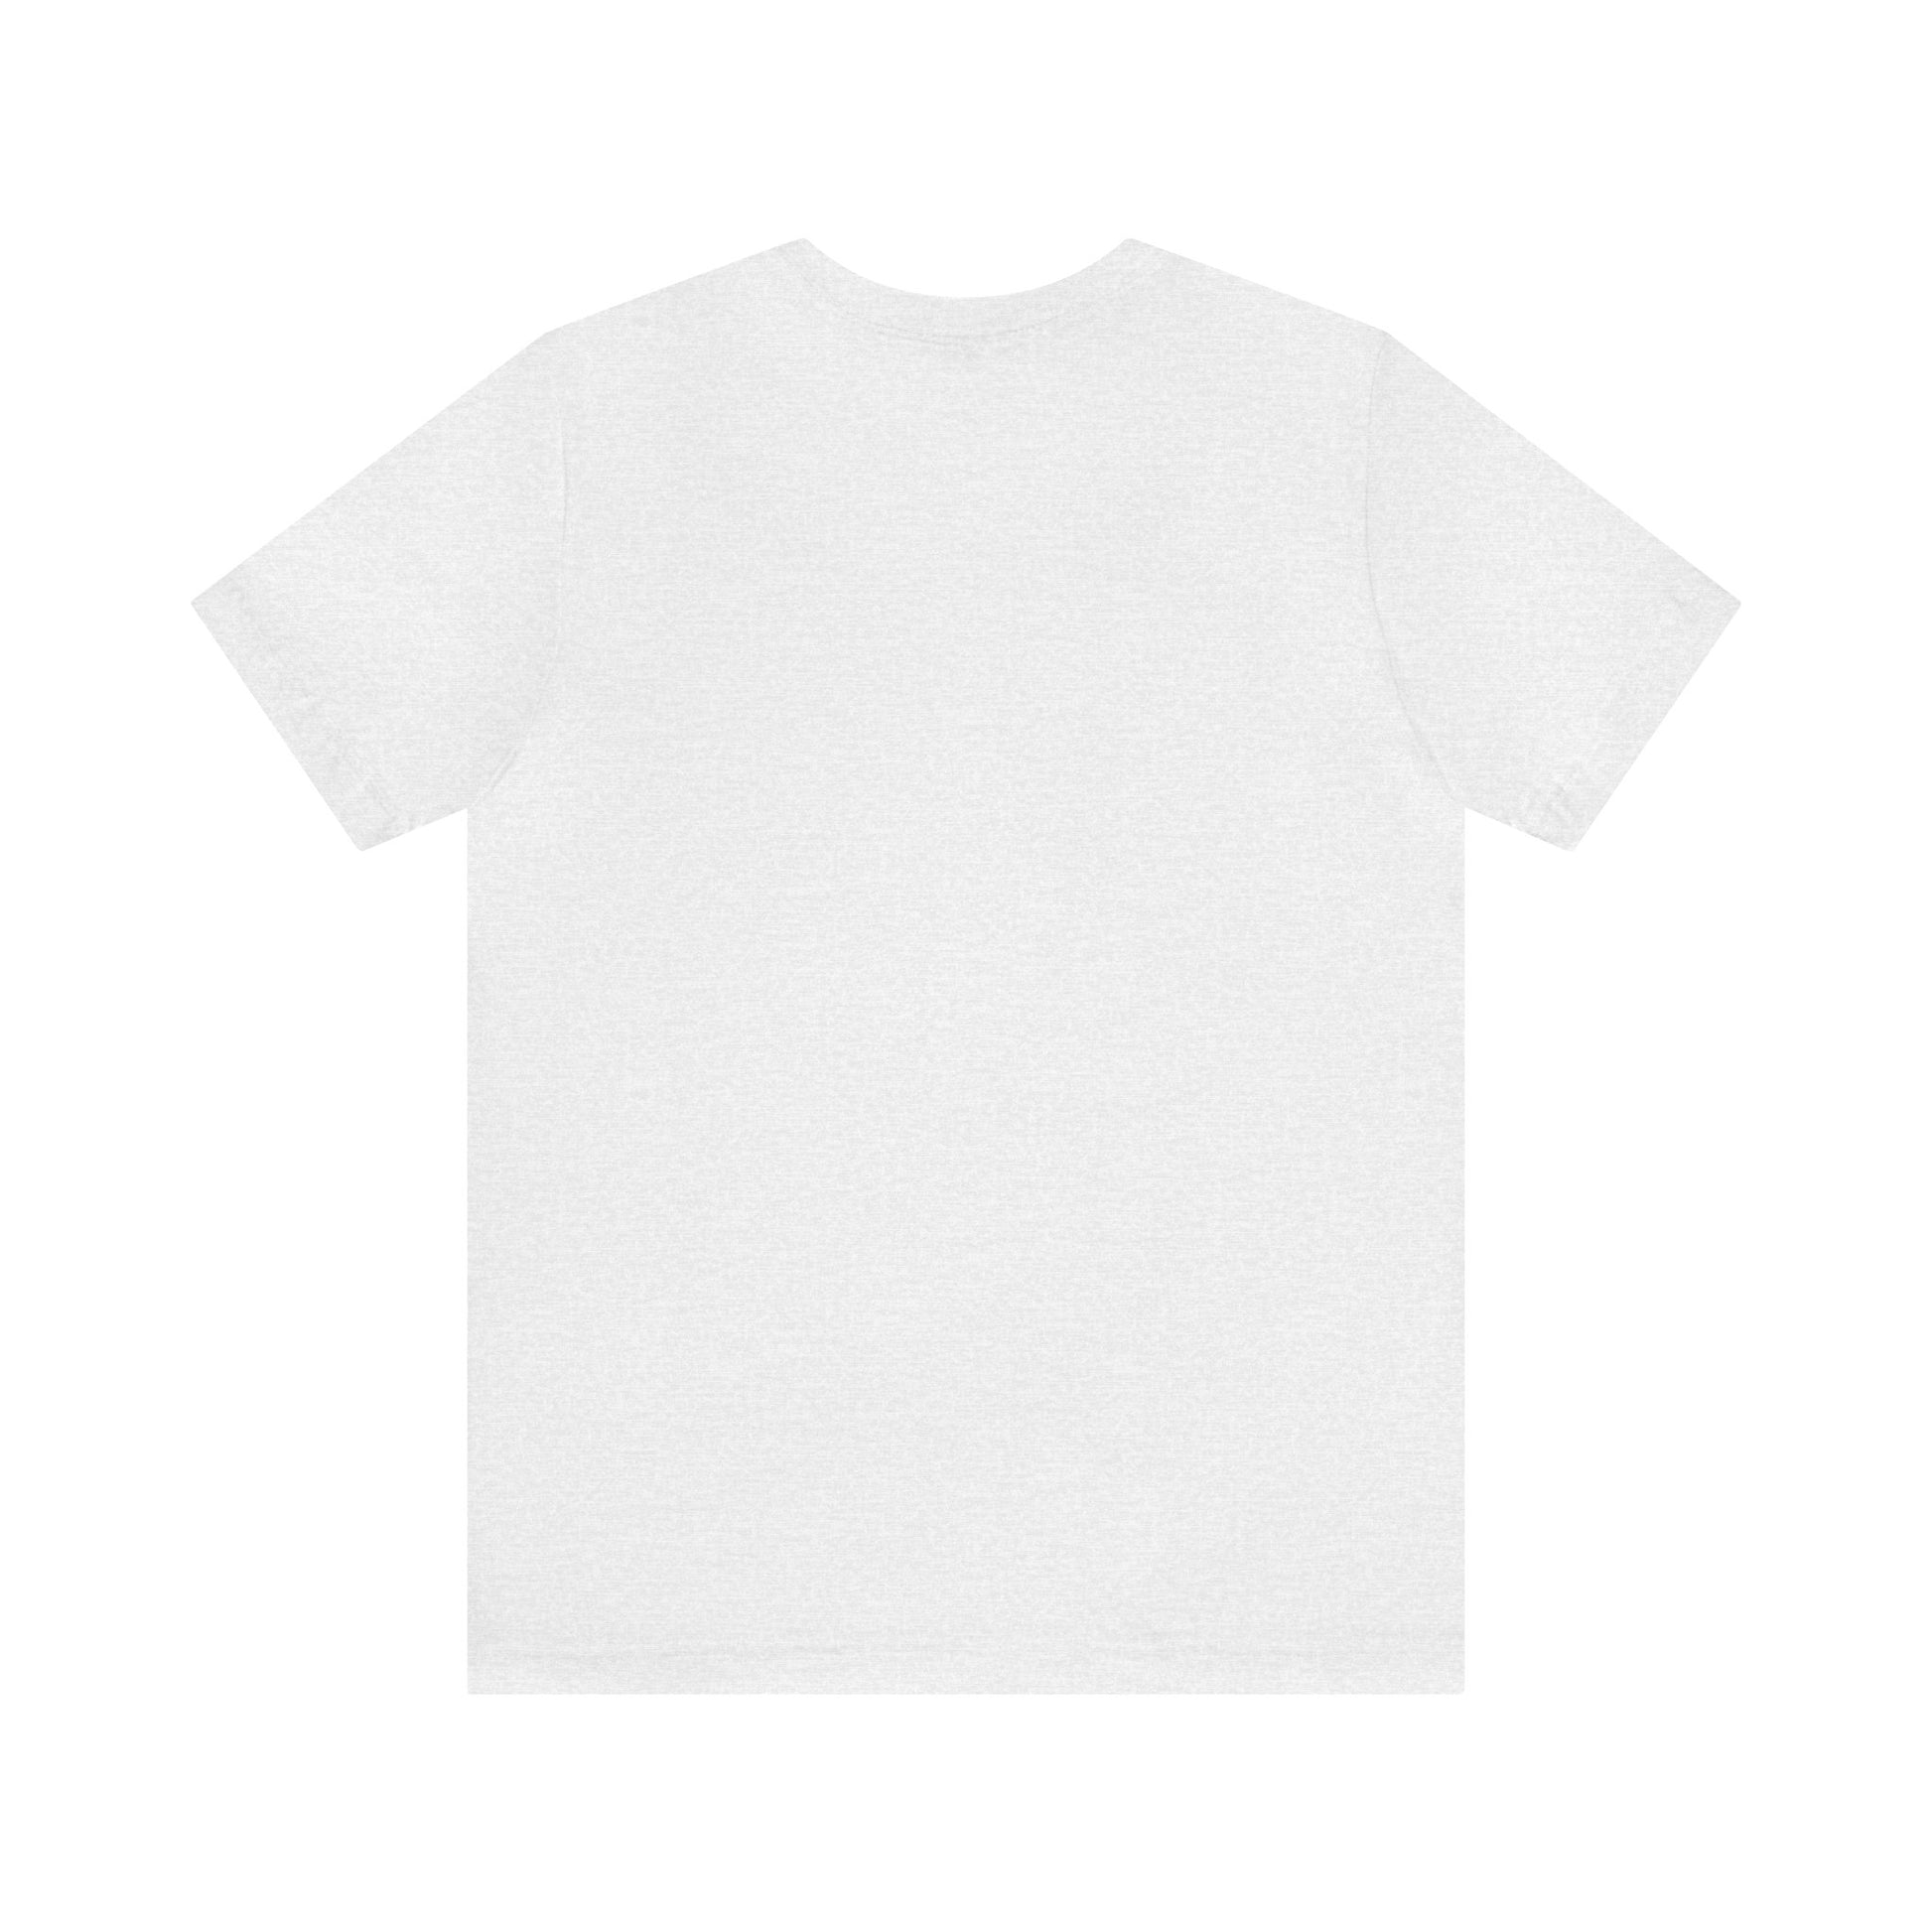 Splashgoo ASD T-Shirt